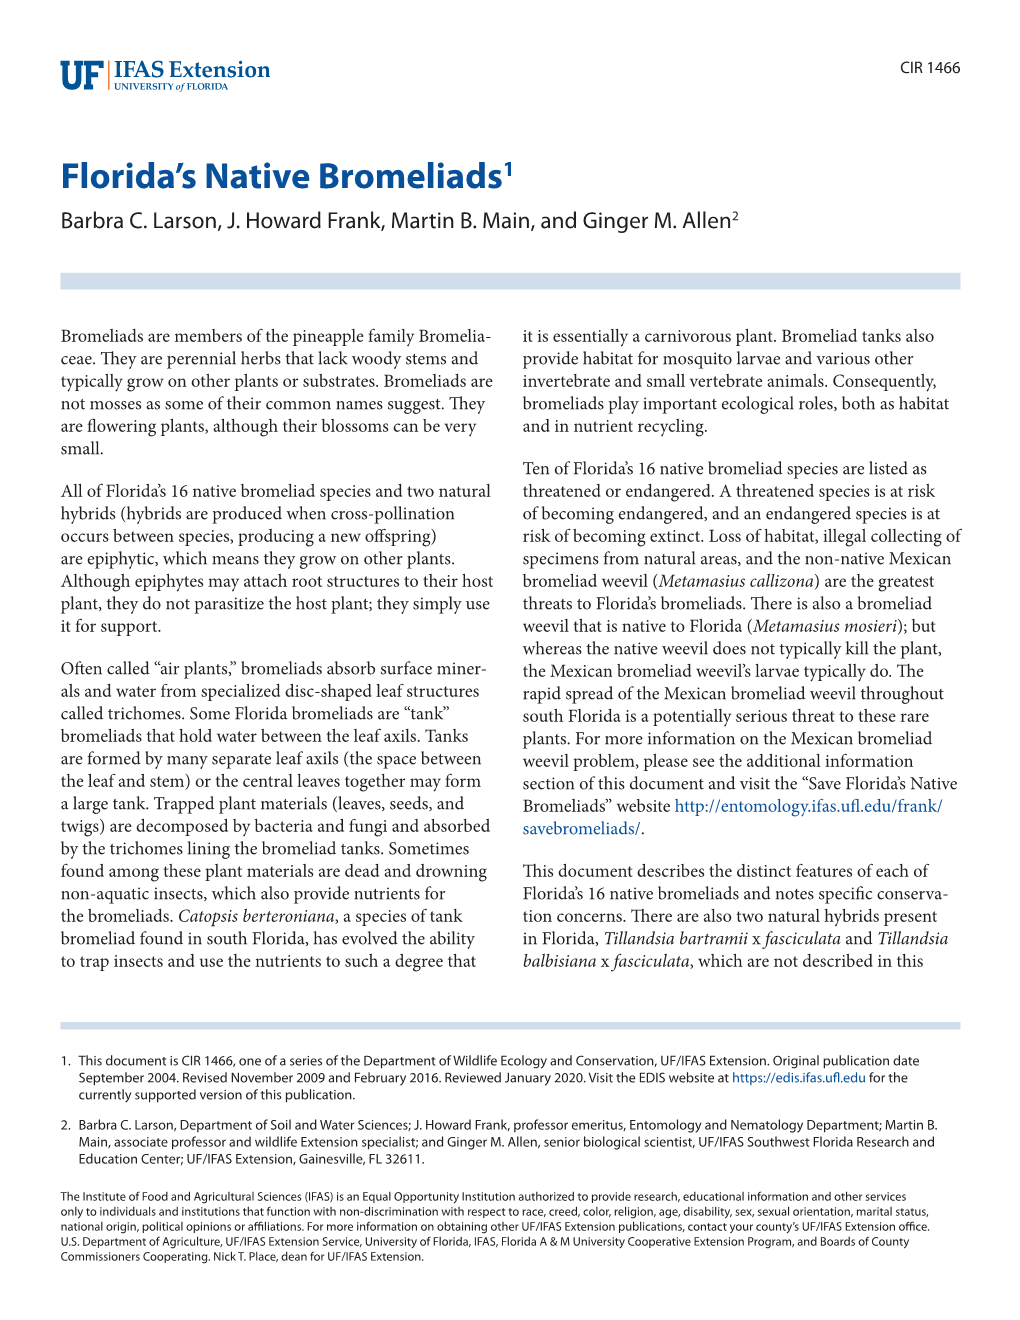 Florida's Native Bromeliads1